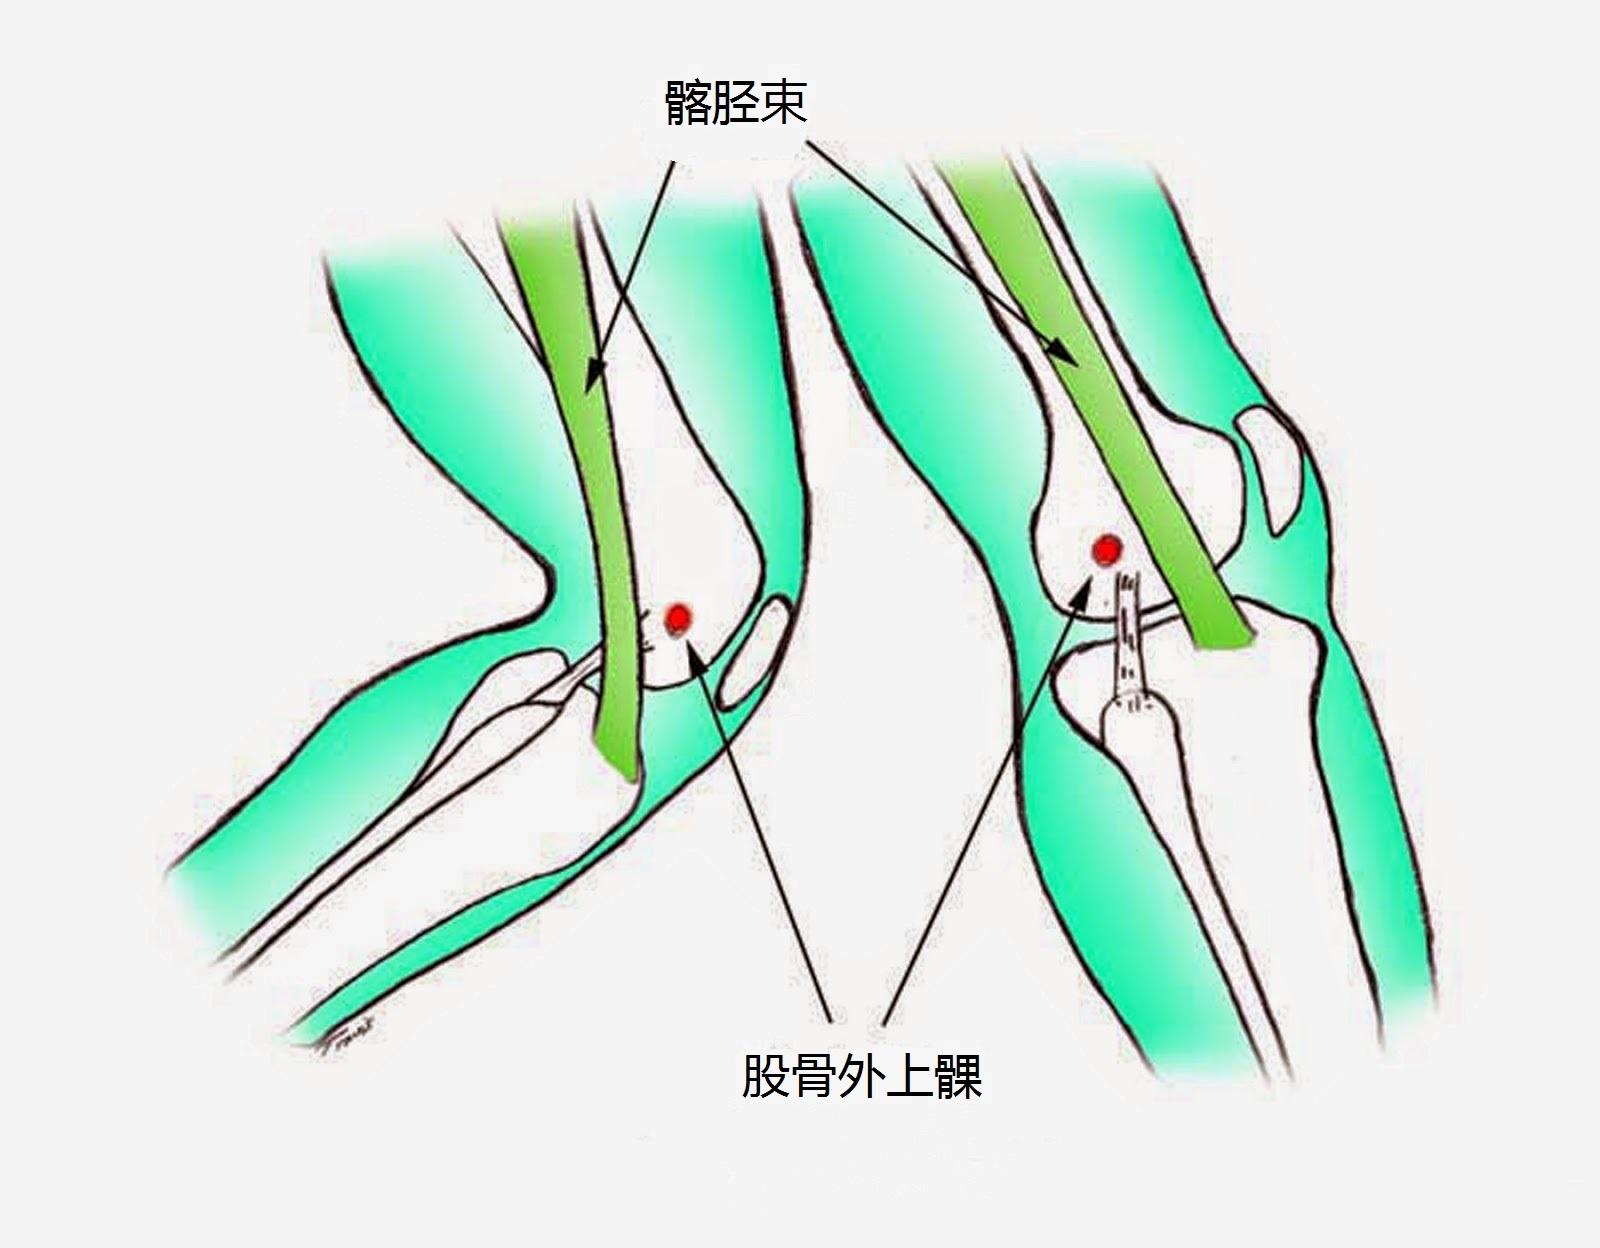 膝盖扭伤恢复期多少天？|膝关节|软组织|膝盖|扭伤|断裂|患者|-健康界